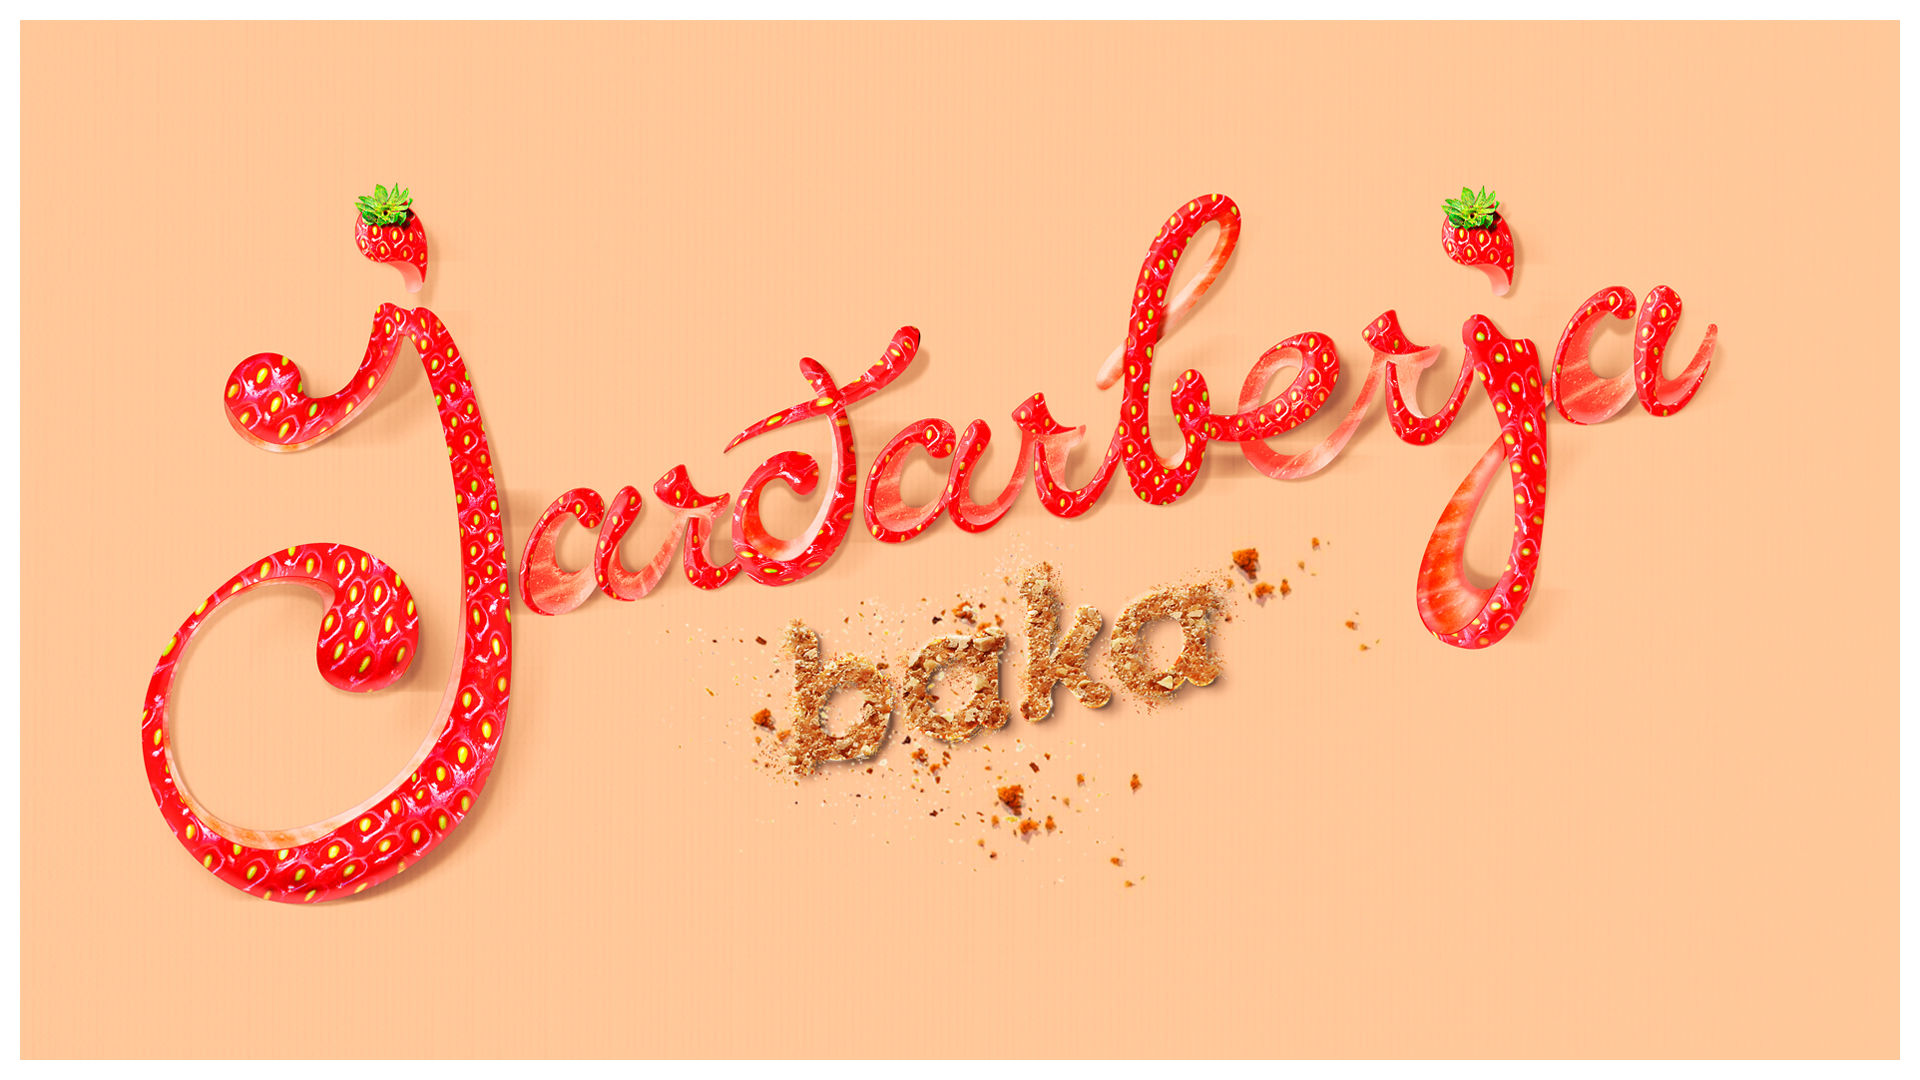 jardarberjabaka_lettering_1920x1080_margin